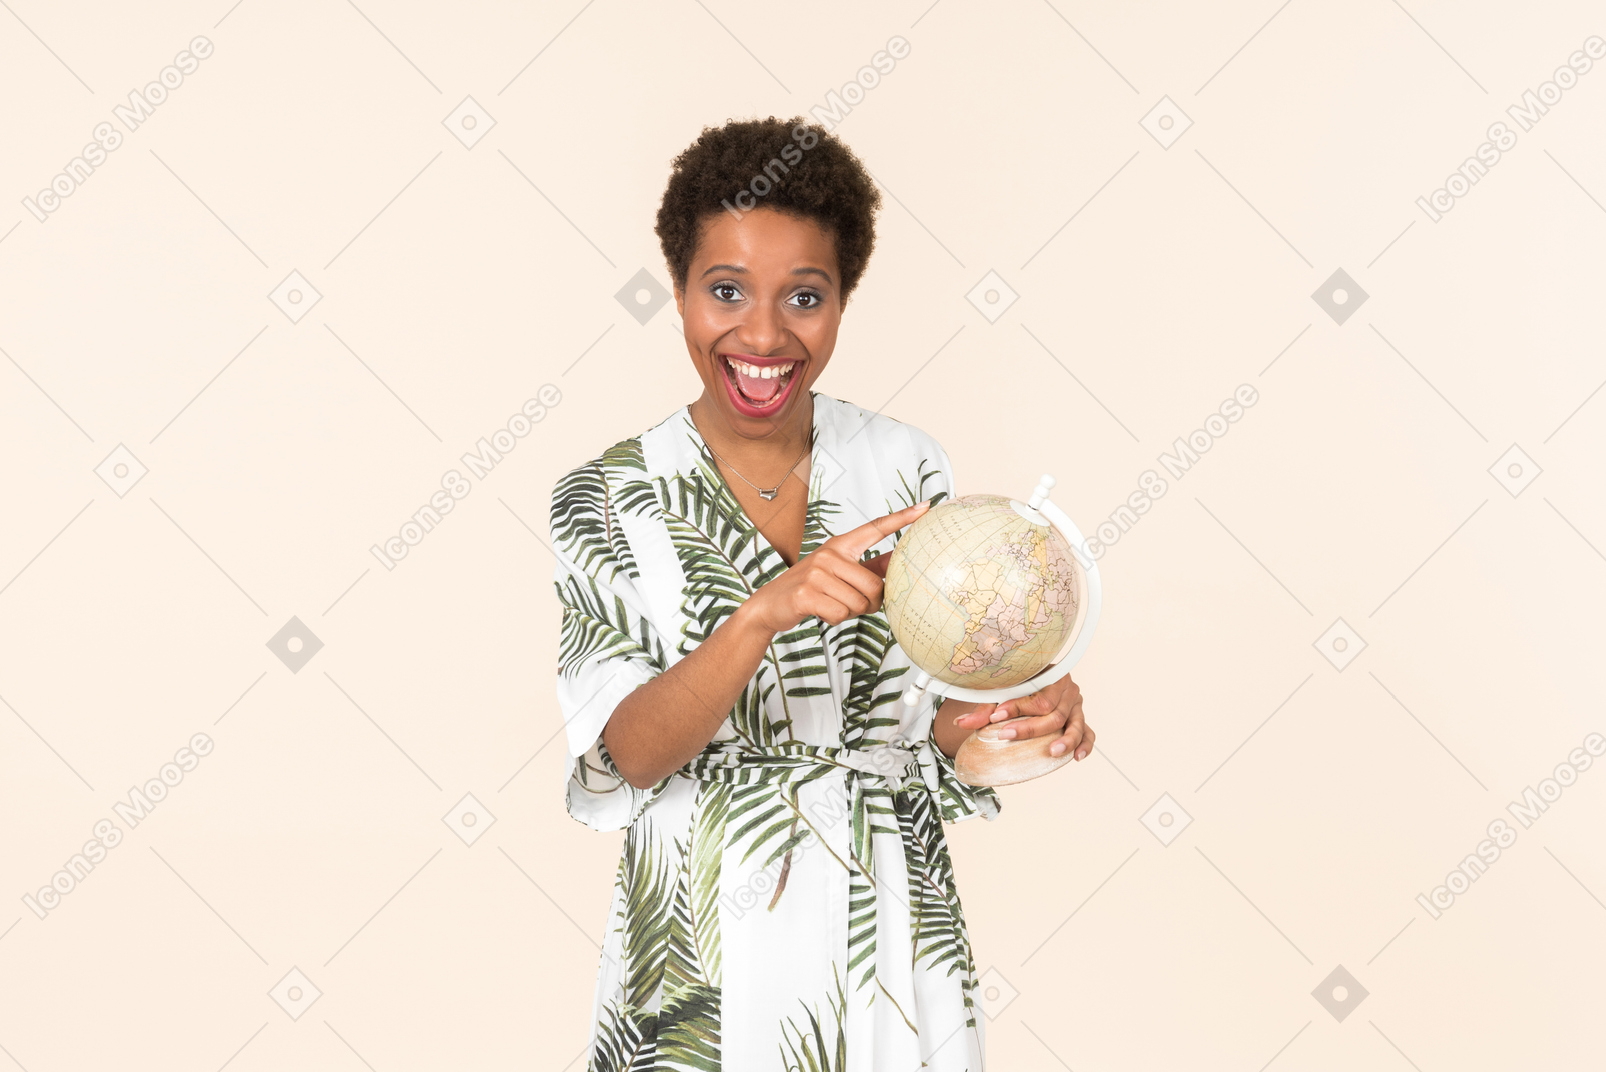 Schwarze kurzhaarige frau in einem weißen und grünen kleid, stehend mit einem globus in der hand